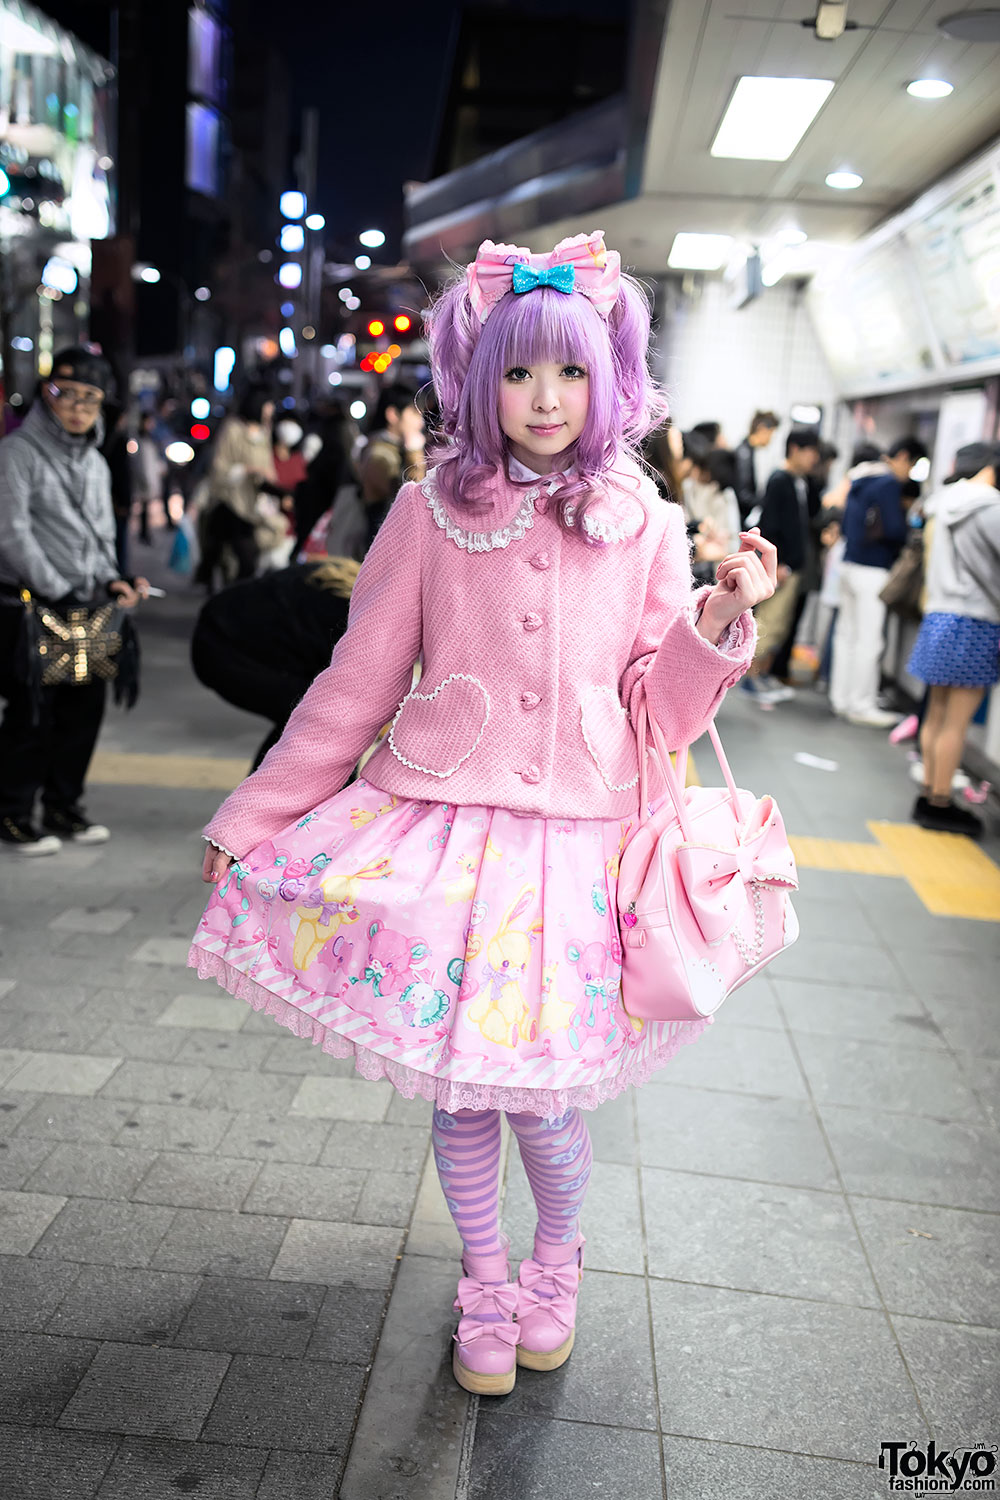 How to dress like a Lolita girl